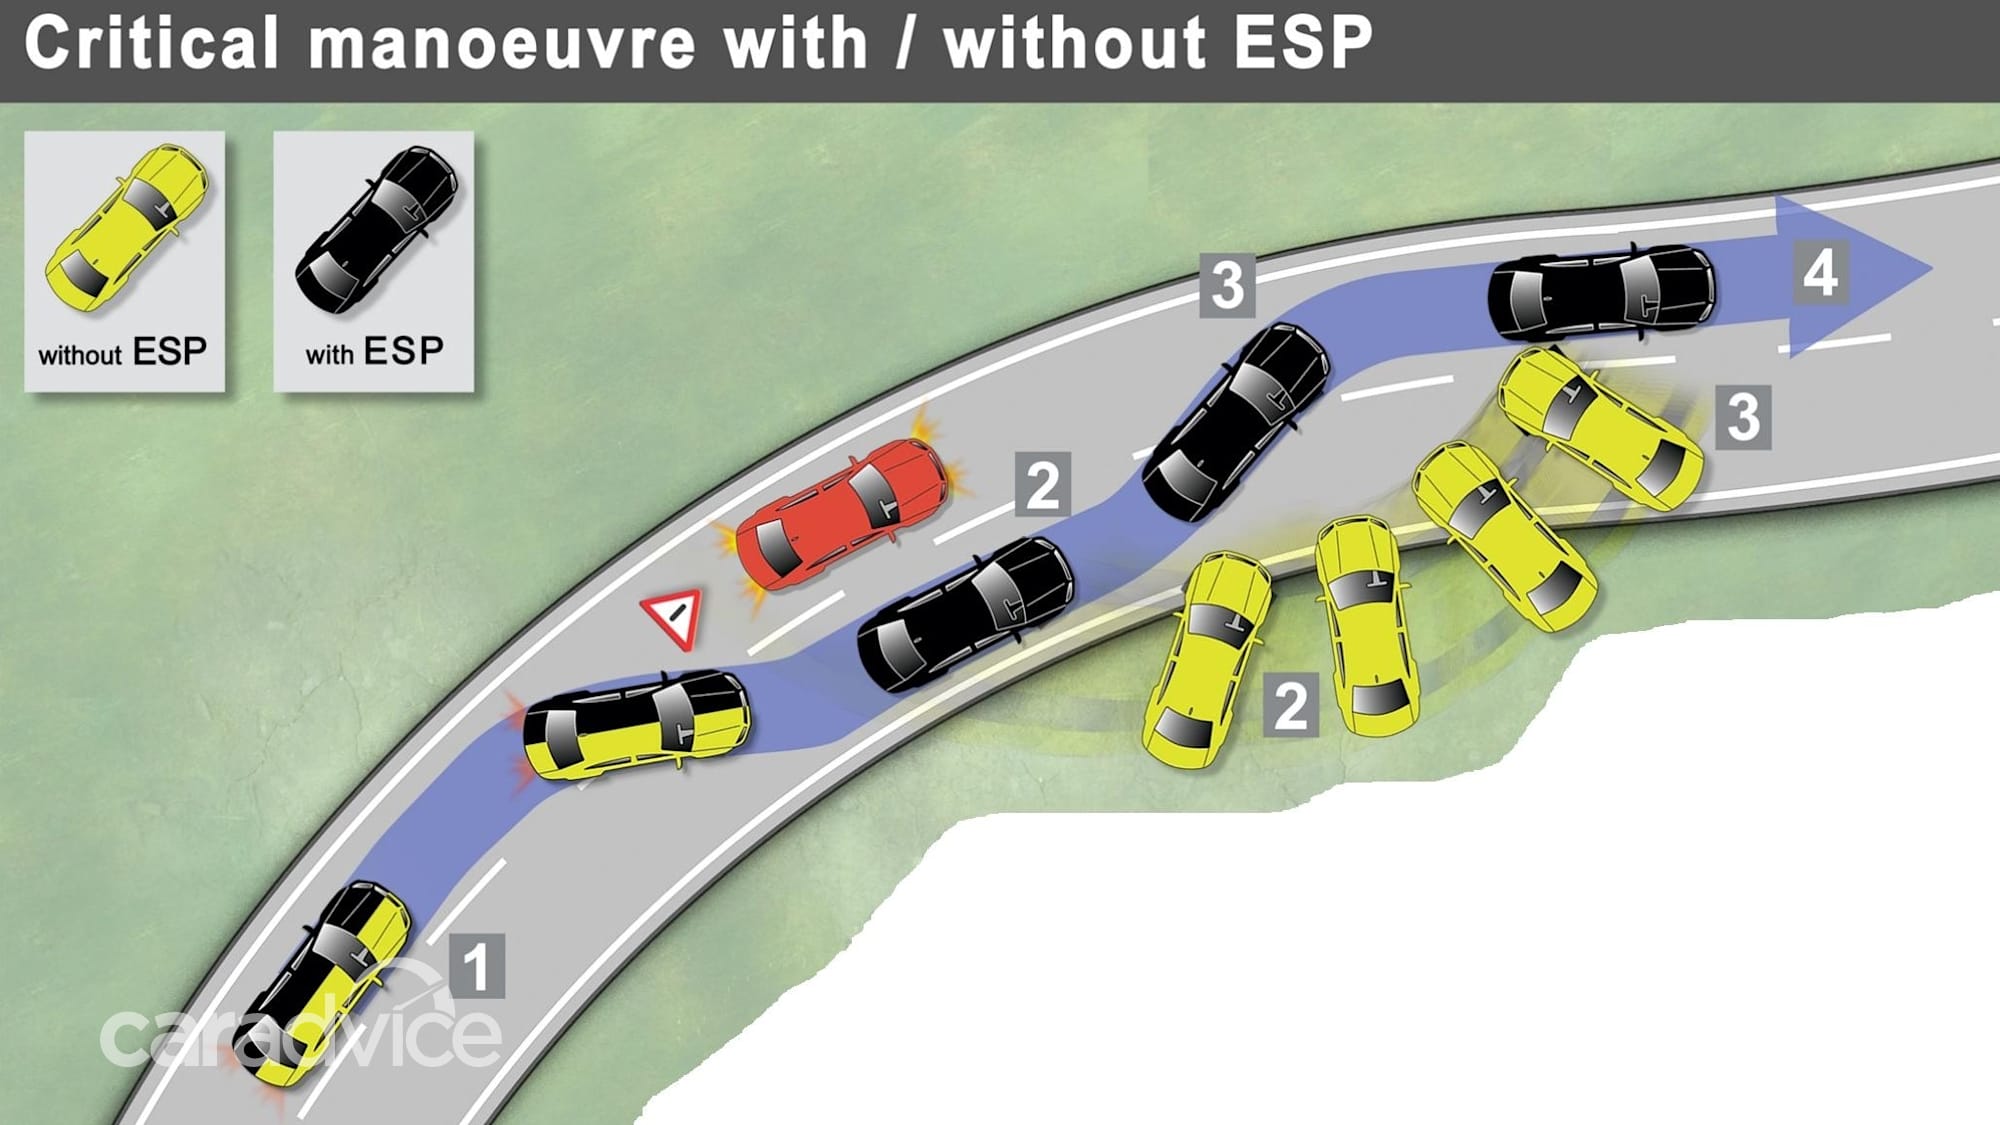 Как работает система курсовой устойчивости автомобиля видео: Обзор системы курсовой устойчивости ESP